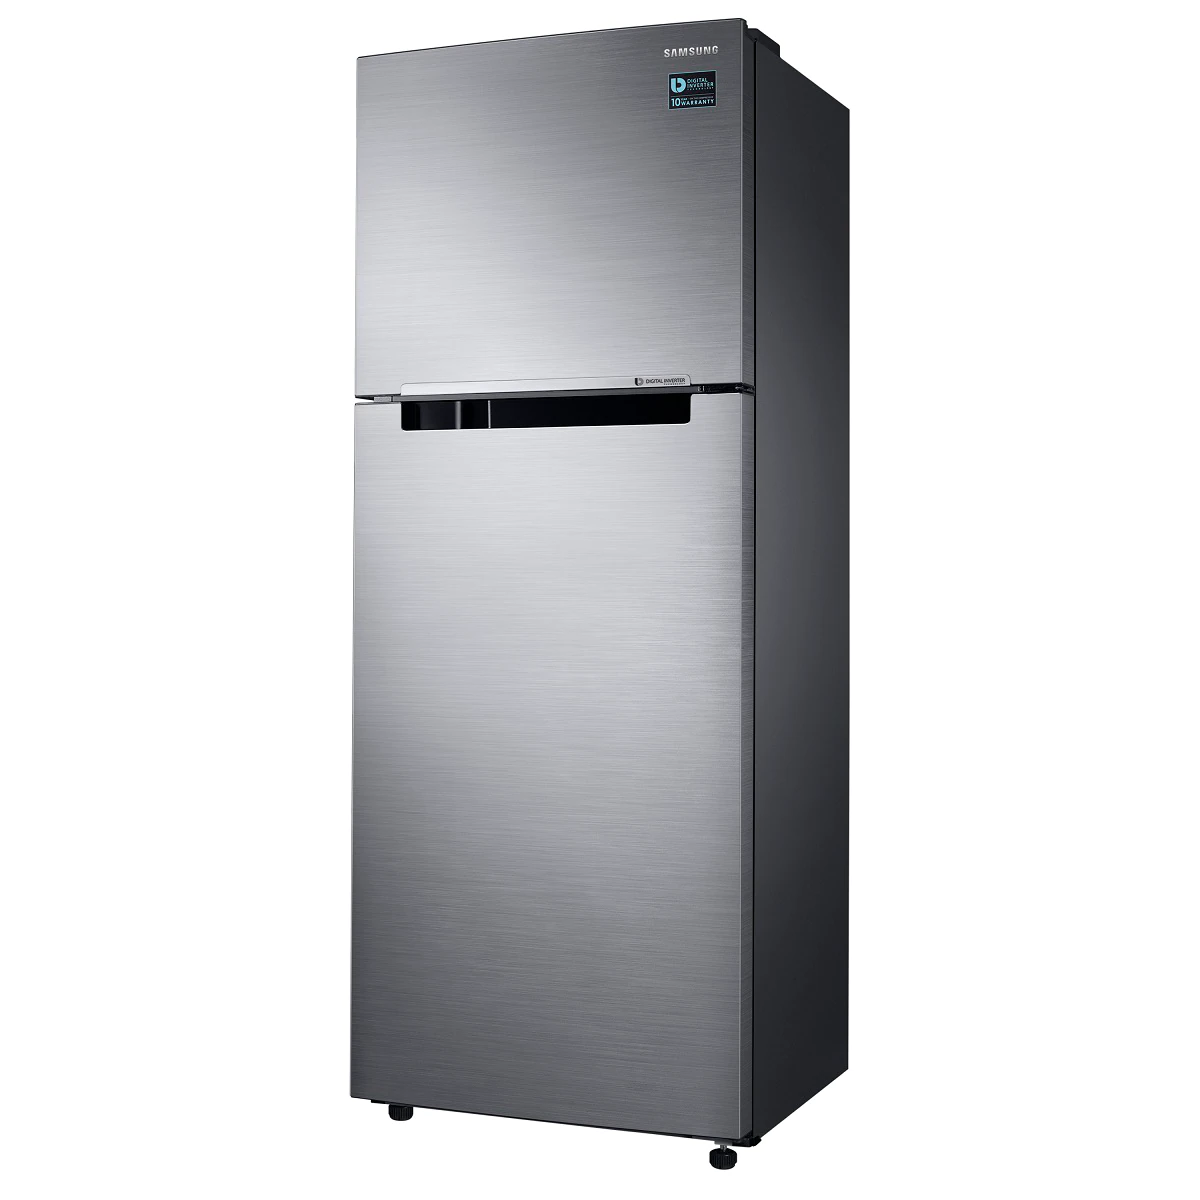 三星 RT32K5035S9 321L 獨立式 2 門冰箱